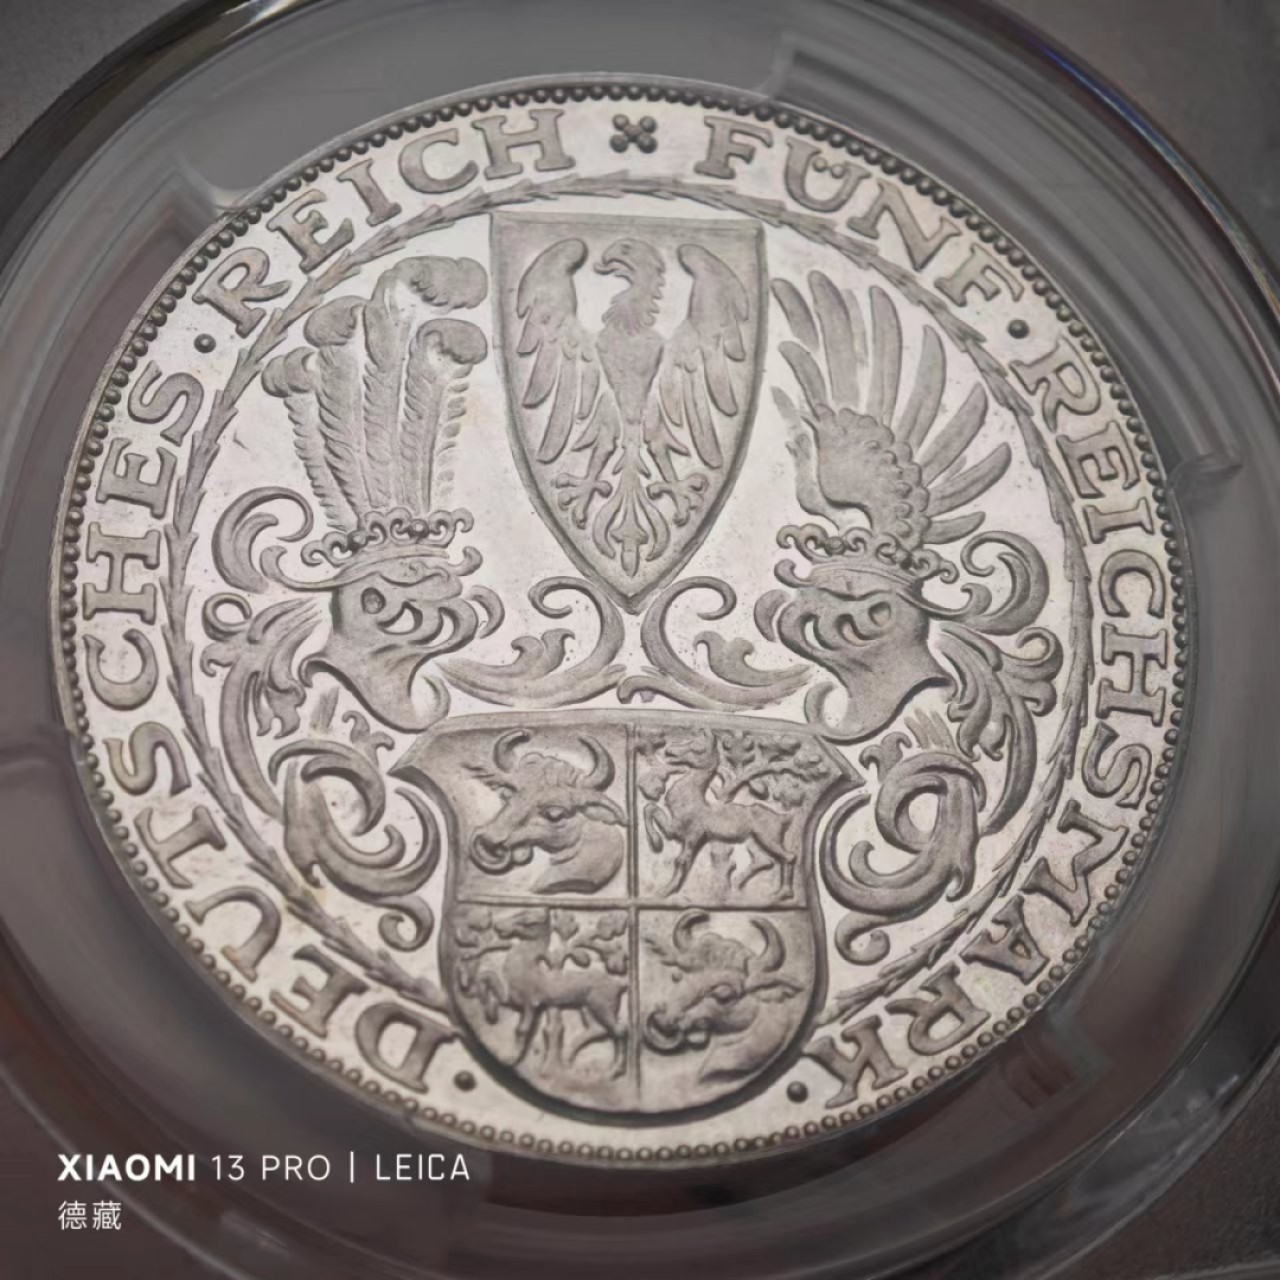 1927年德国魏玛共和国兴登堡5马克样币 PCGS SP63真正的样币！存世量估计个位数！！！